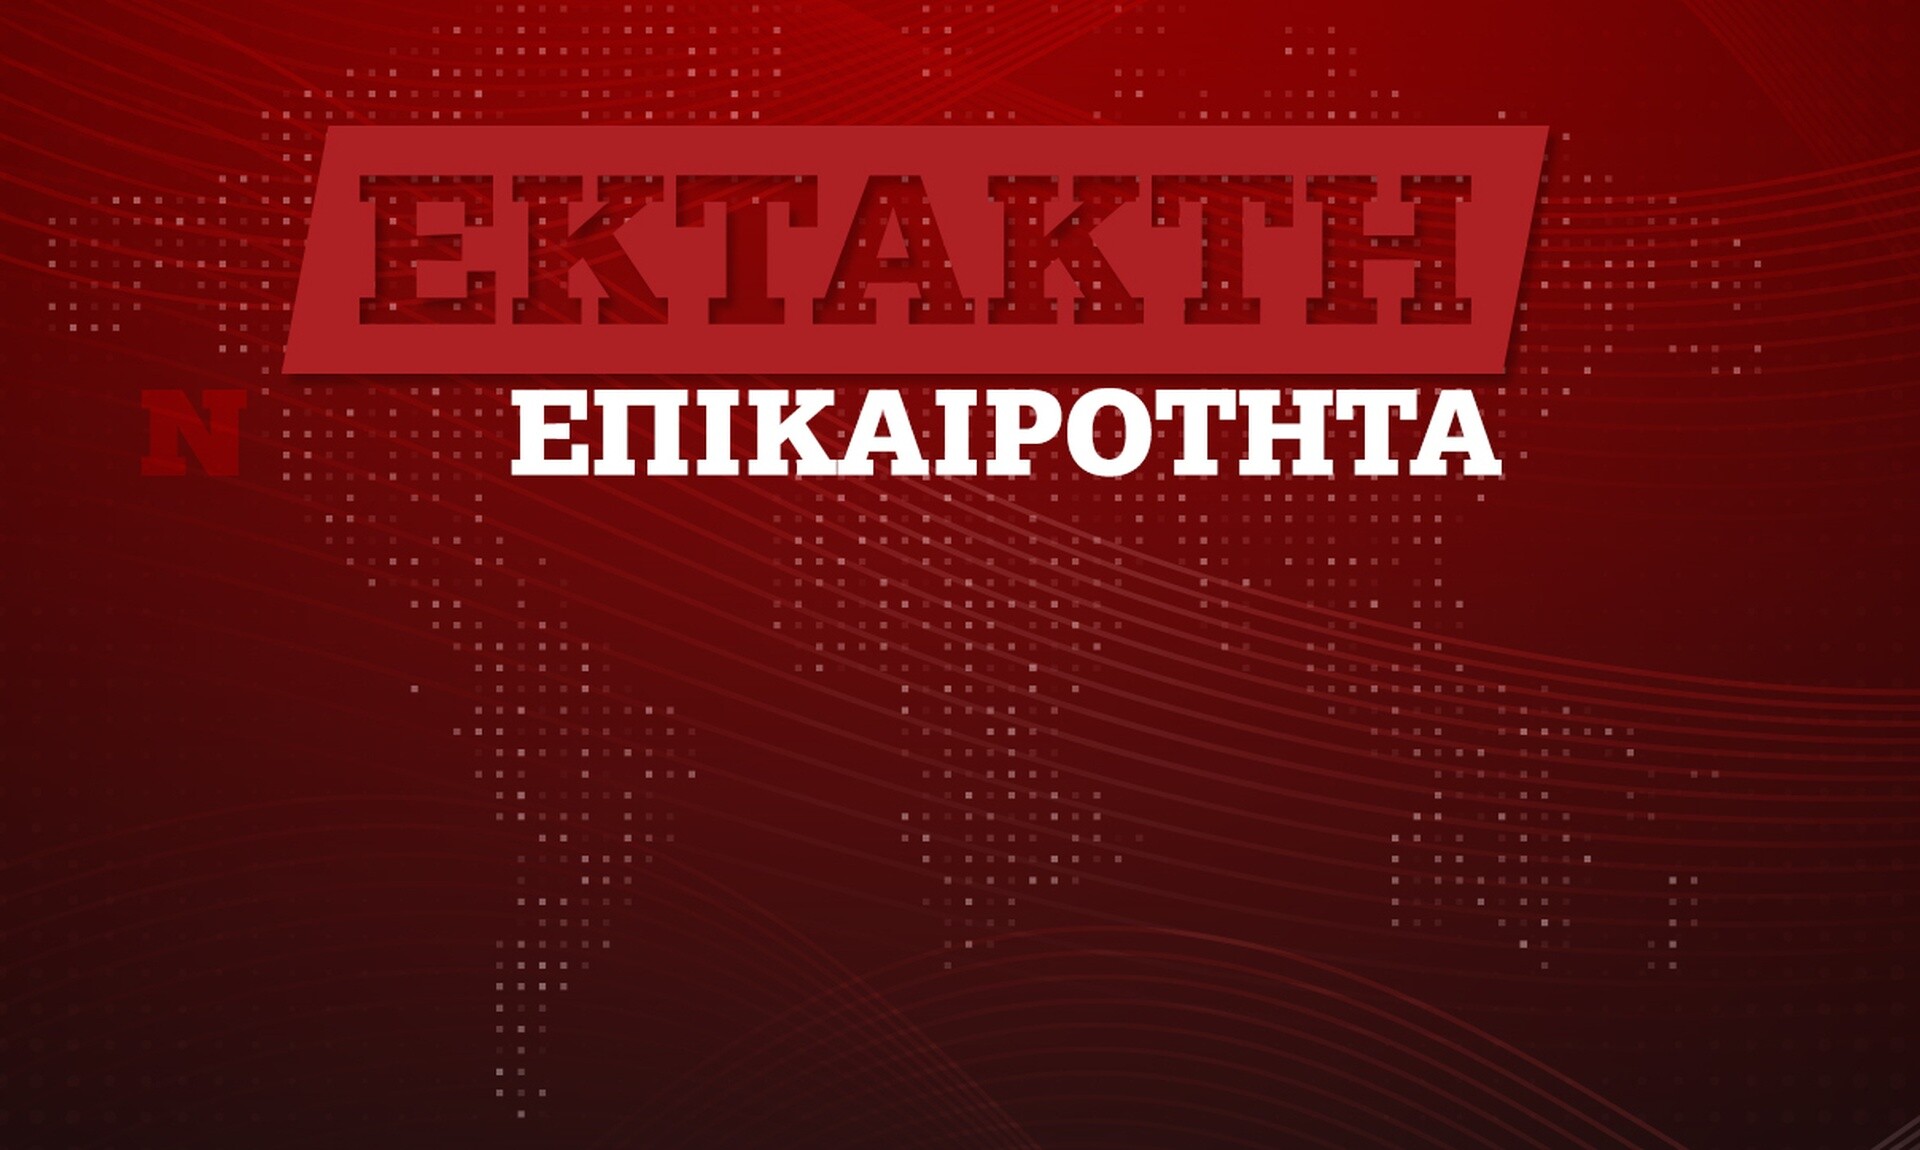 Μητσοτάκης τώρα στη Βουλή: Δεν πιστεύω ότι υπάρχουν Έλληνες που πενθούν πιο πολύ από τους άλλους